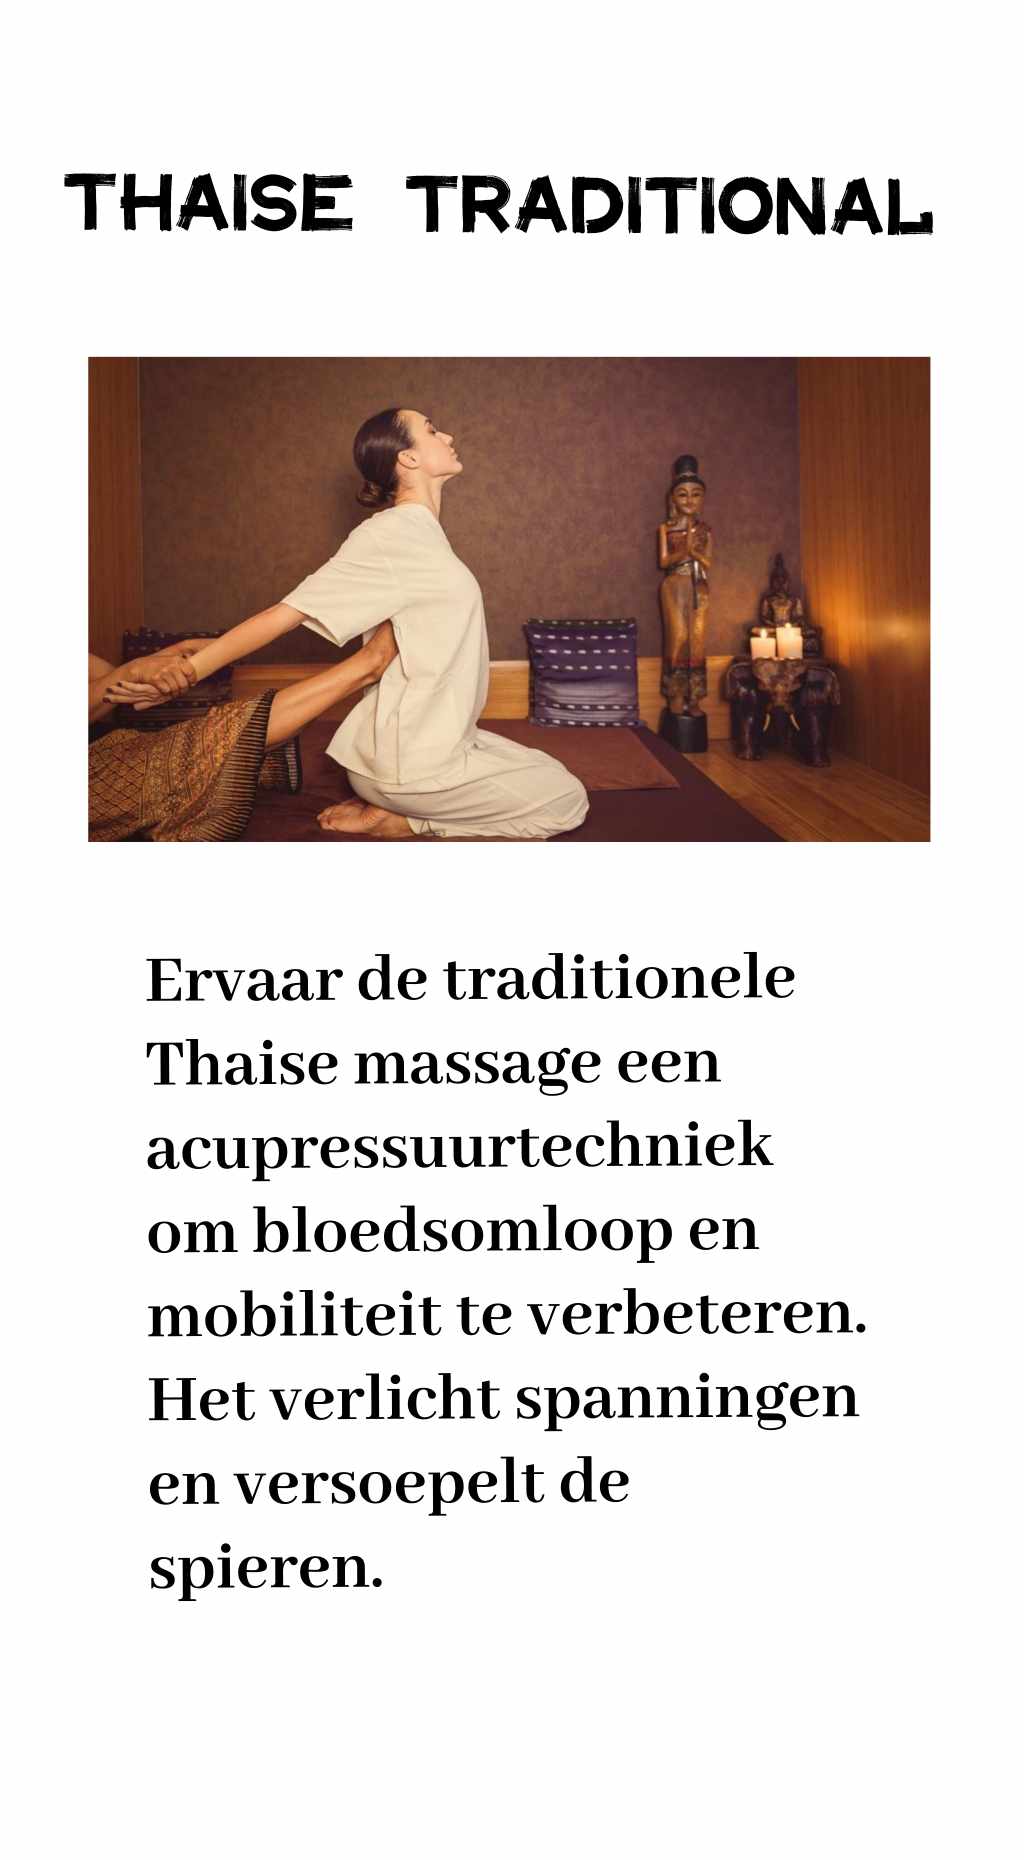 Magic Thai Massage geeft U een woordje uitleg over traditionele thaise massage